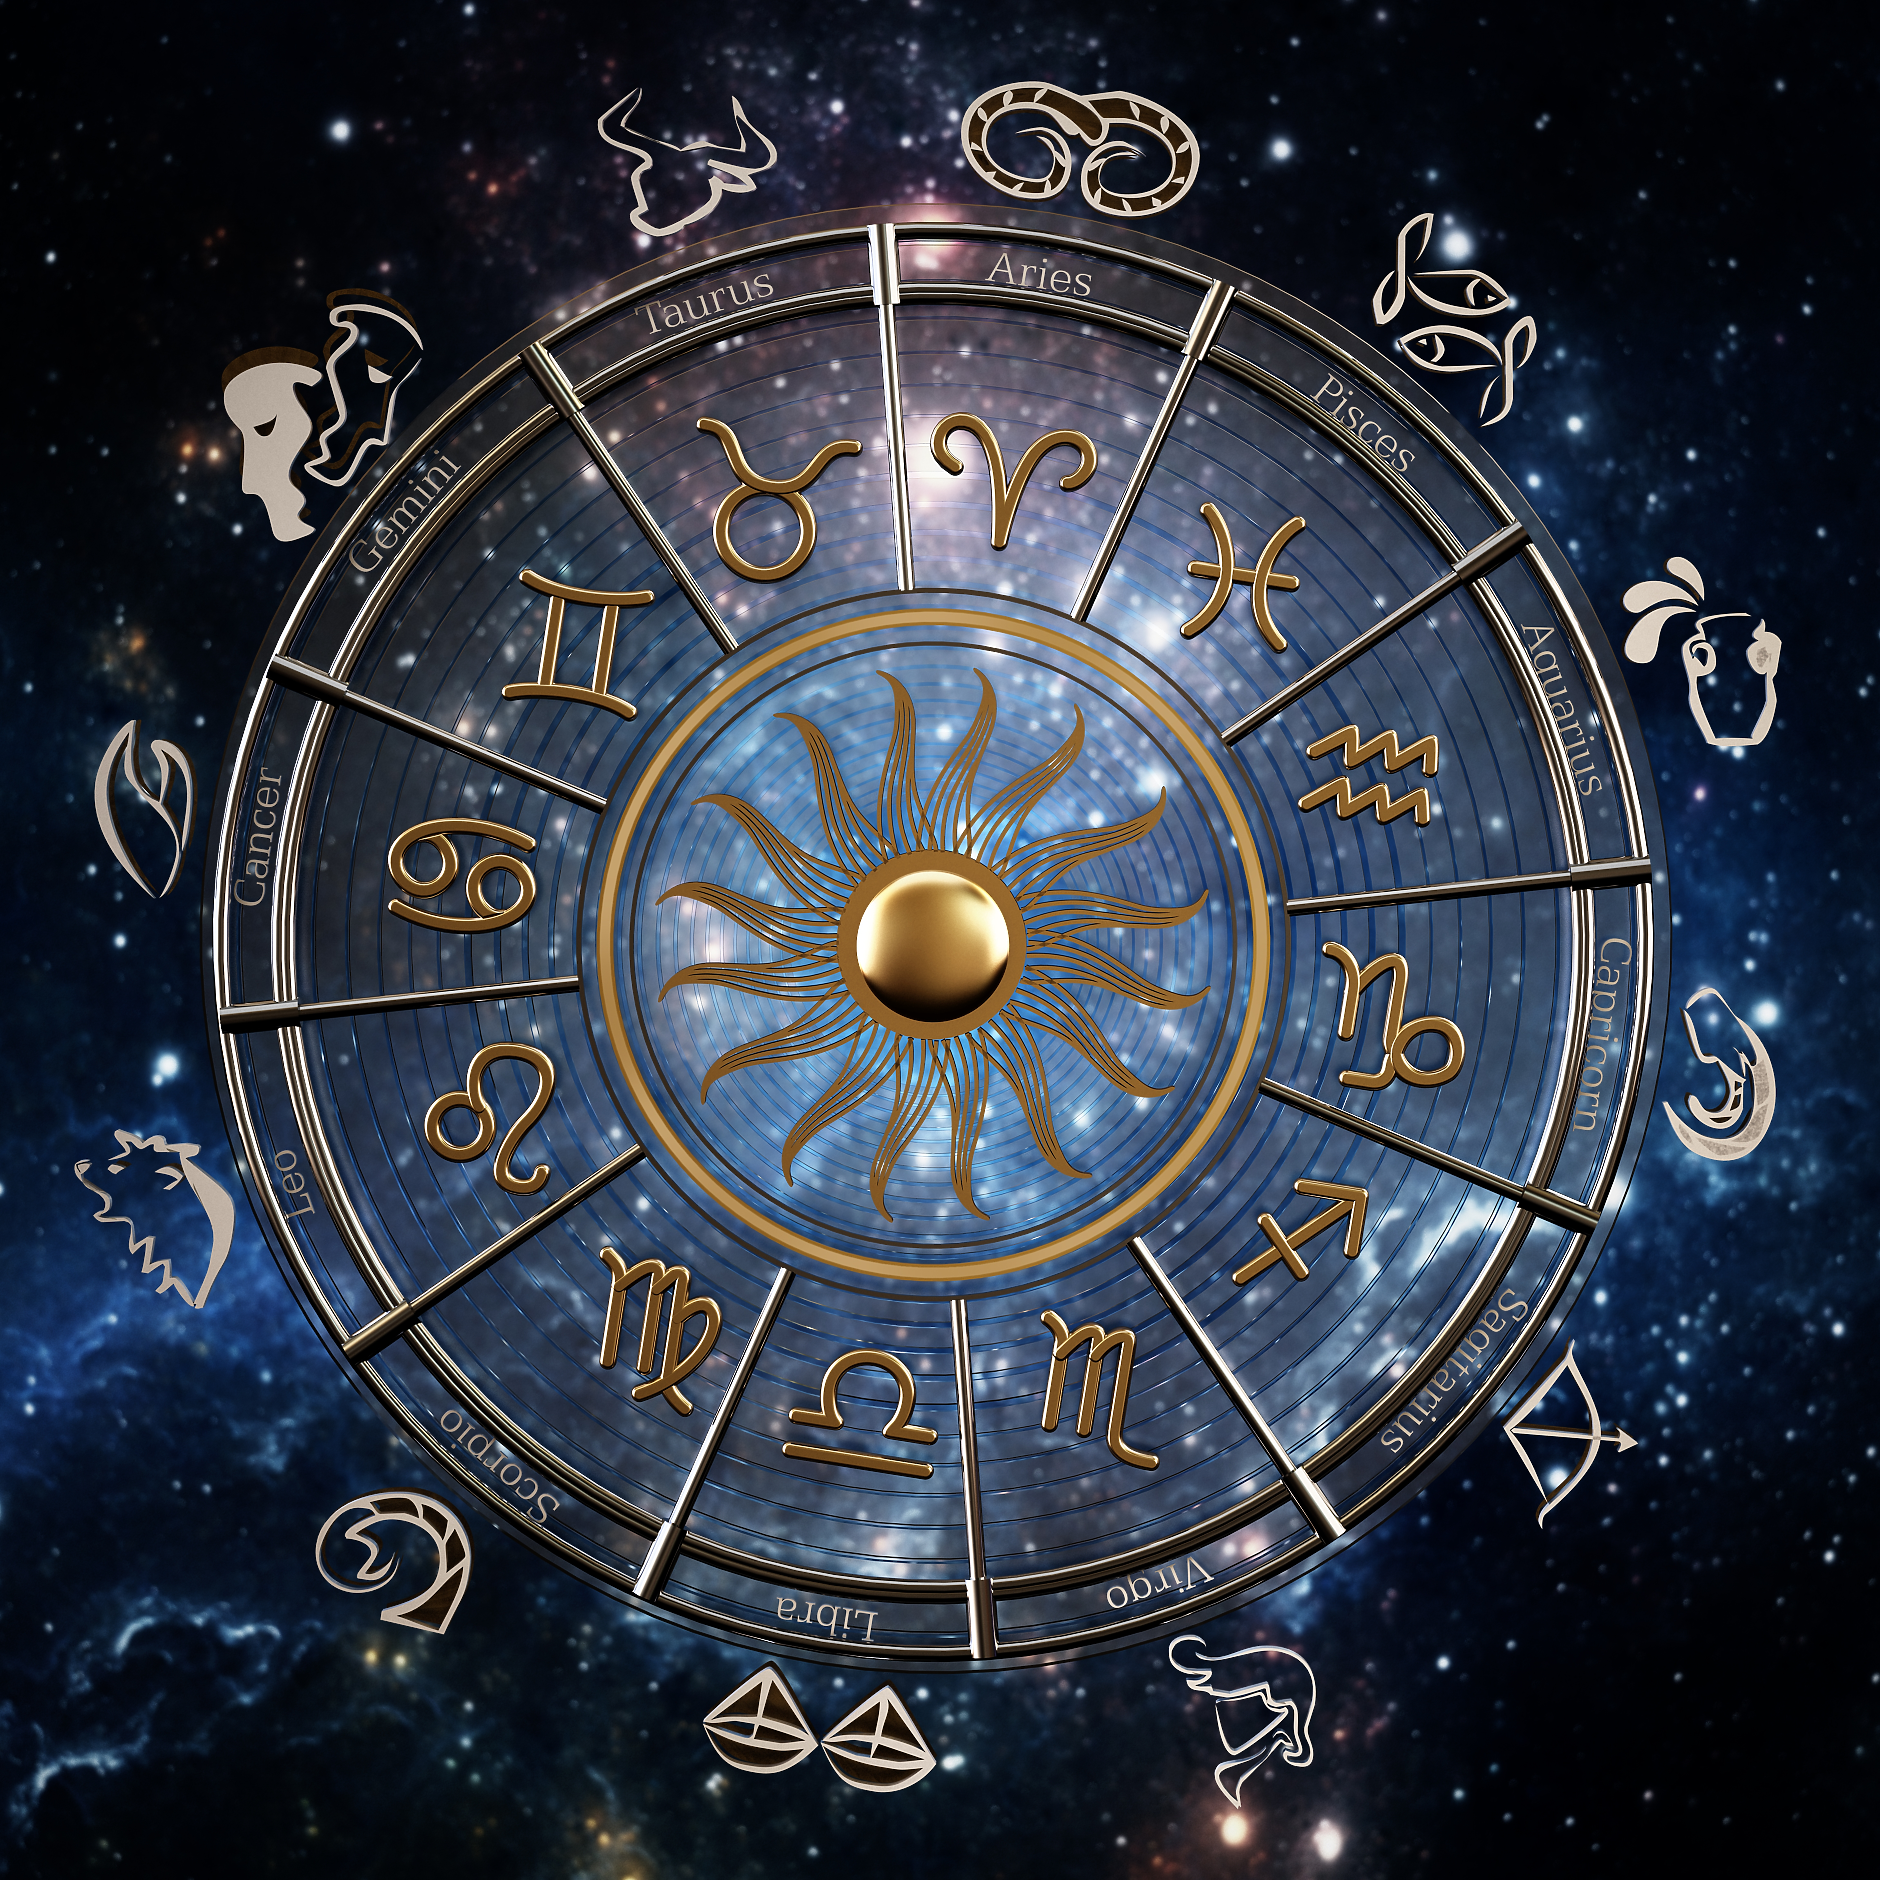 Седмичен хороскоп: Звездите за бизнеса от 27 март до 2 април